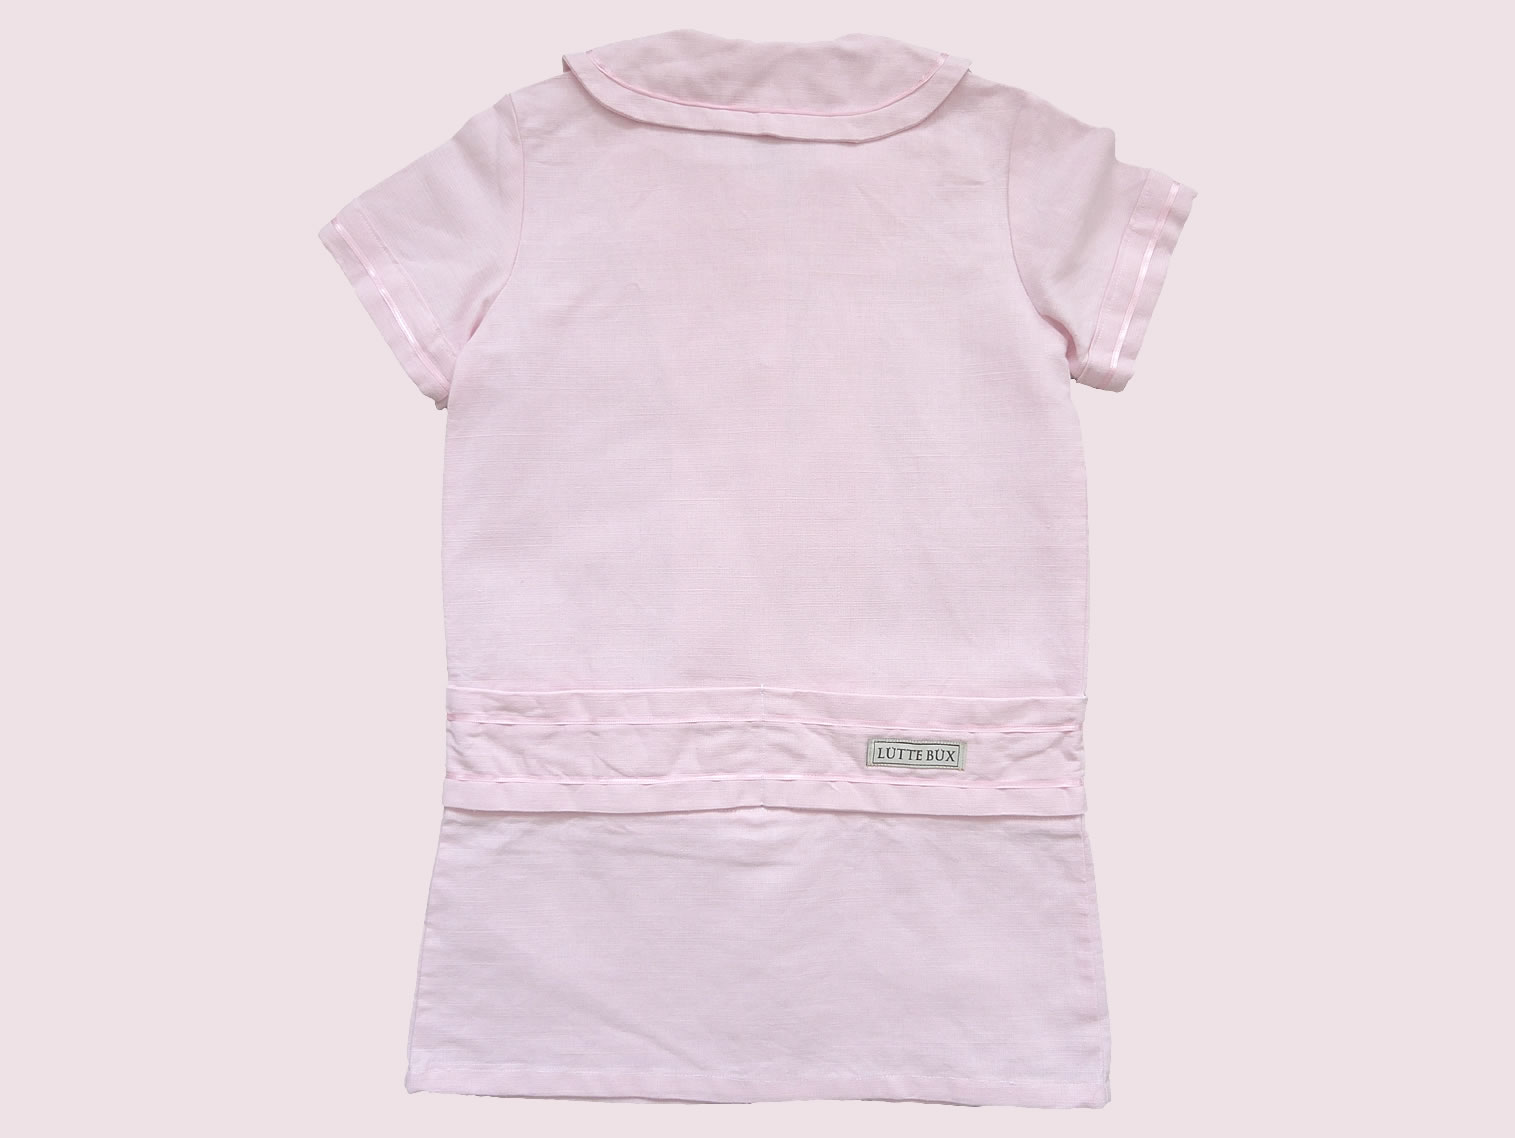 maedchen-kinder-kleid-retro-hemdchen-leinen-rosa-bubikragen-zwanziger-jahre-festliche-kindermode-bullerbue-hinten